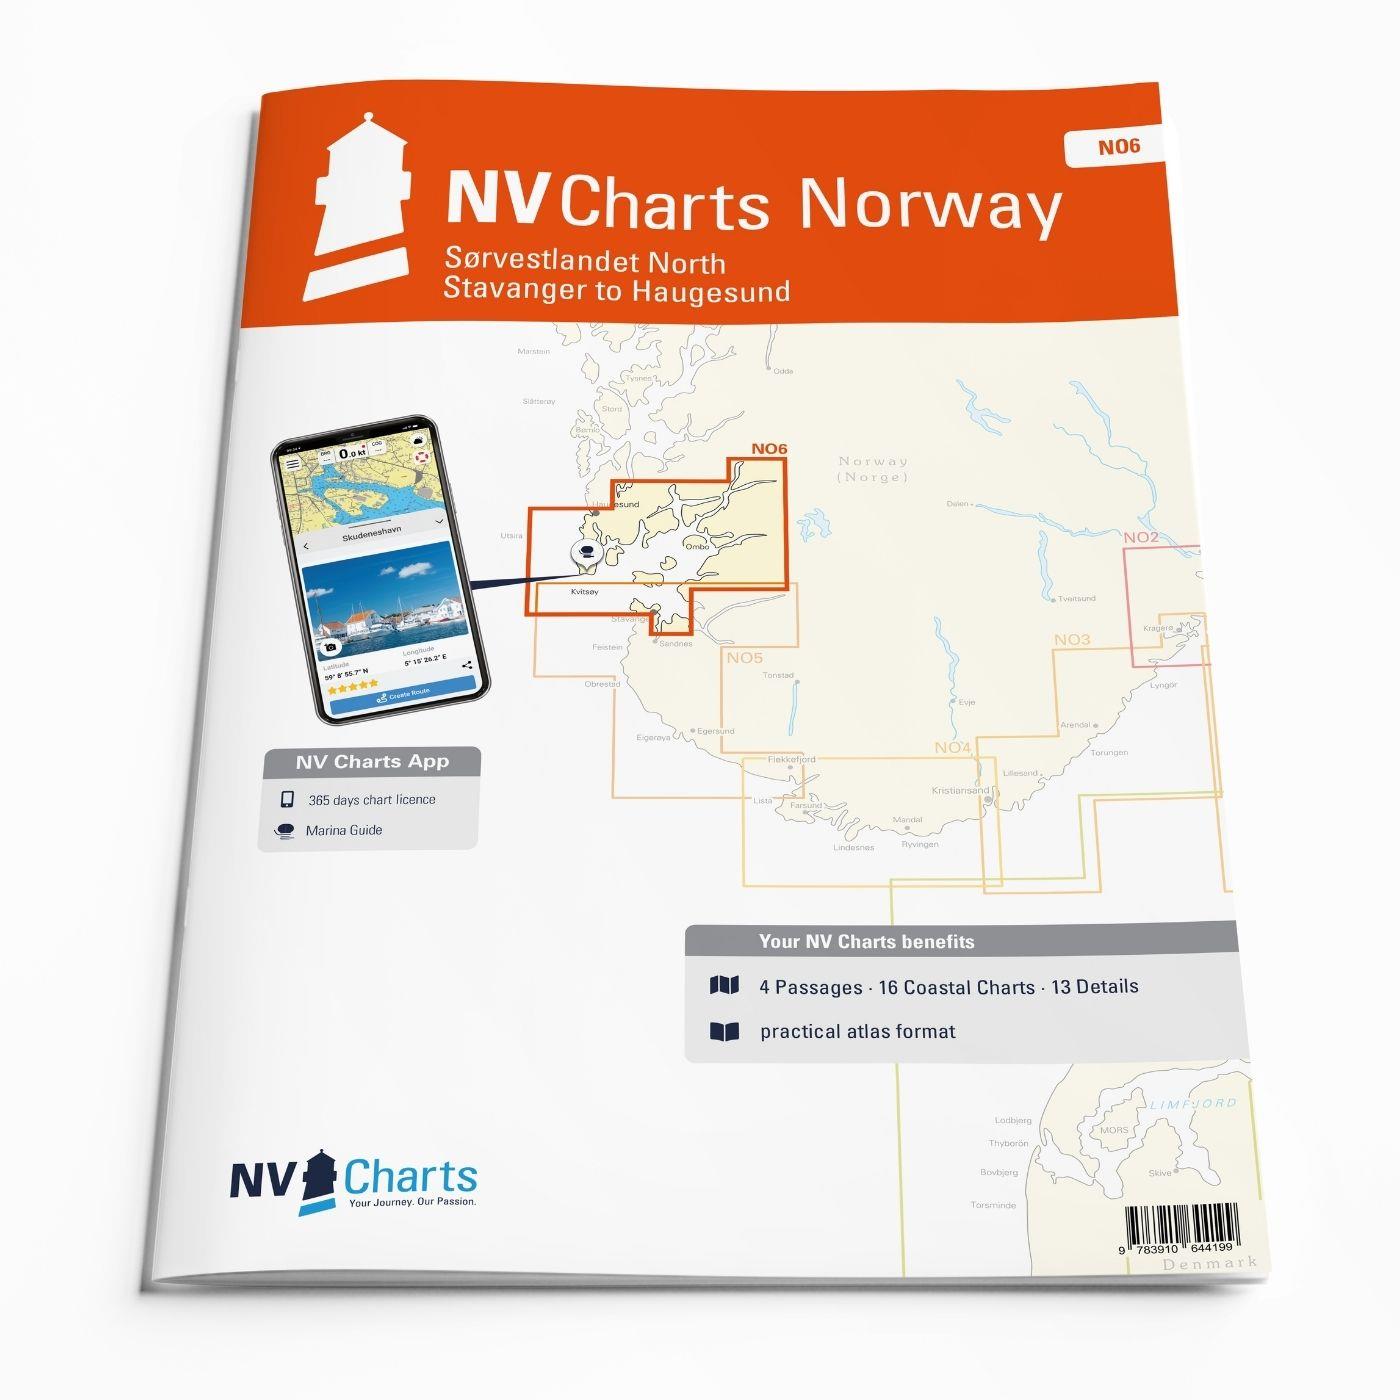 NV Atlas Norway NO6 - Sørvestlandet North - Stavanger to Haugesund